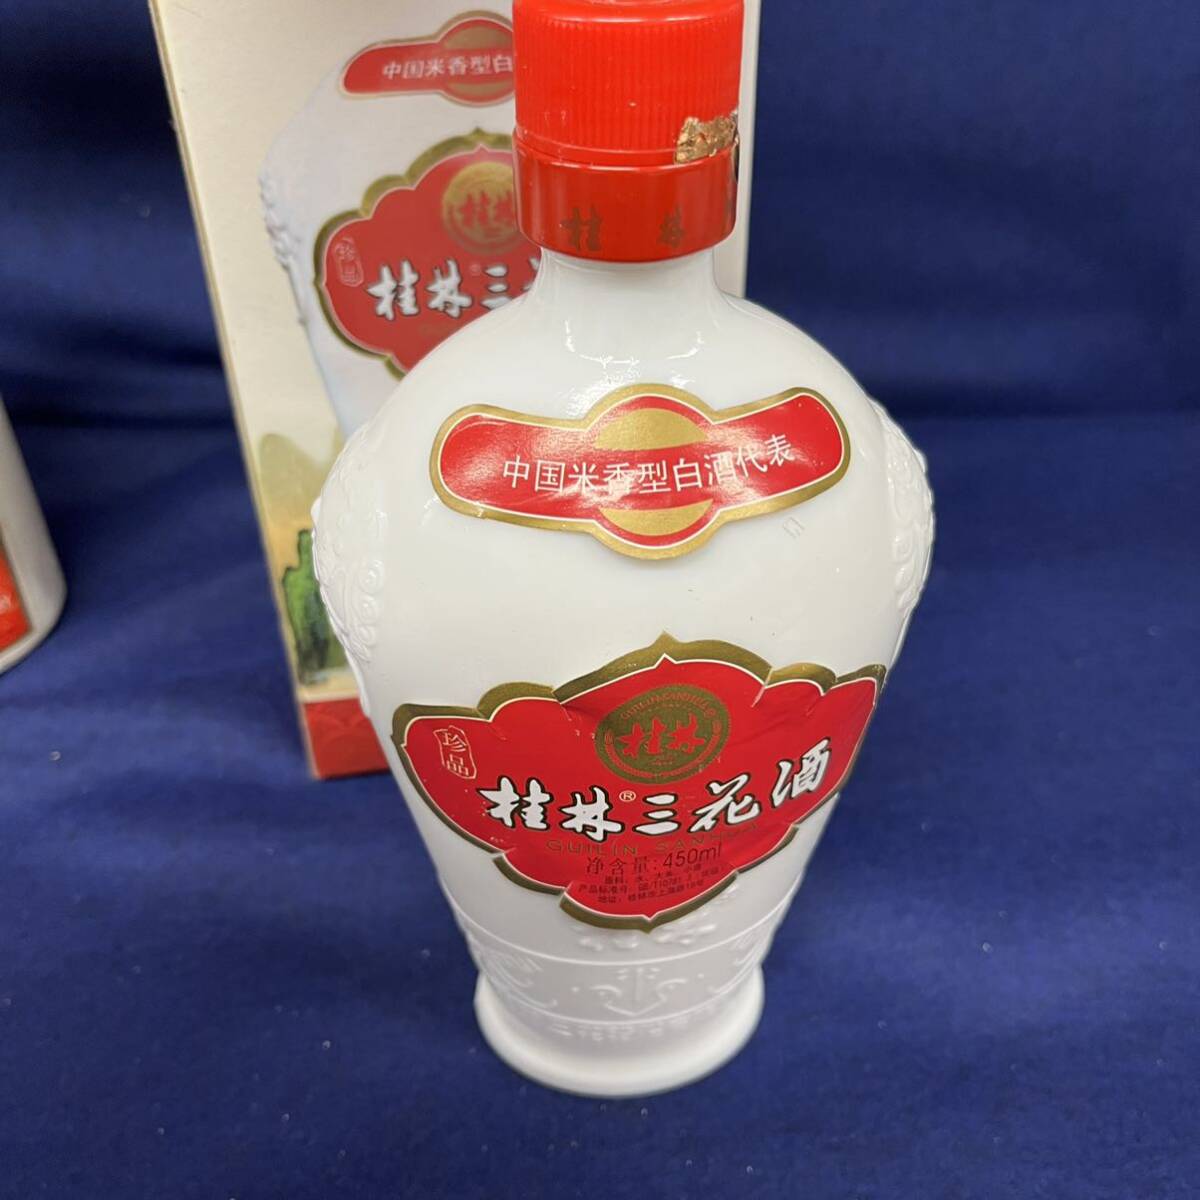 T4158[ частное лицо хранение товар ]/mao Thai sake MOUTAI China sake небо женщина этикетка старый sake ... шт. sake 